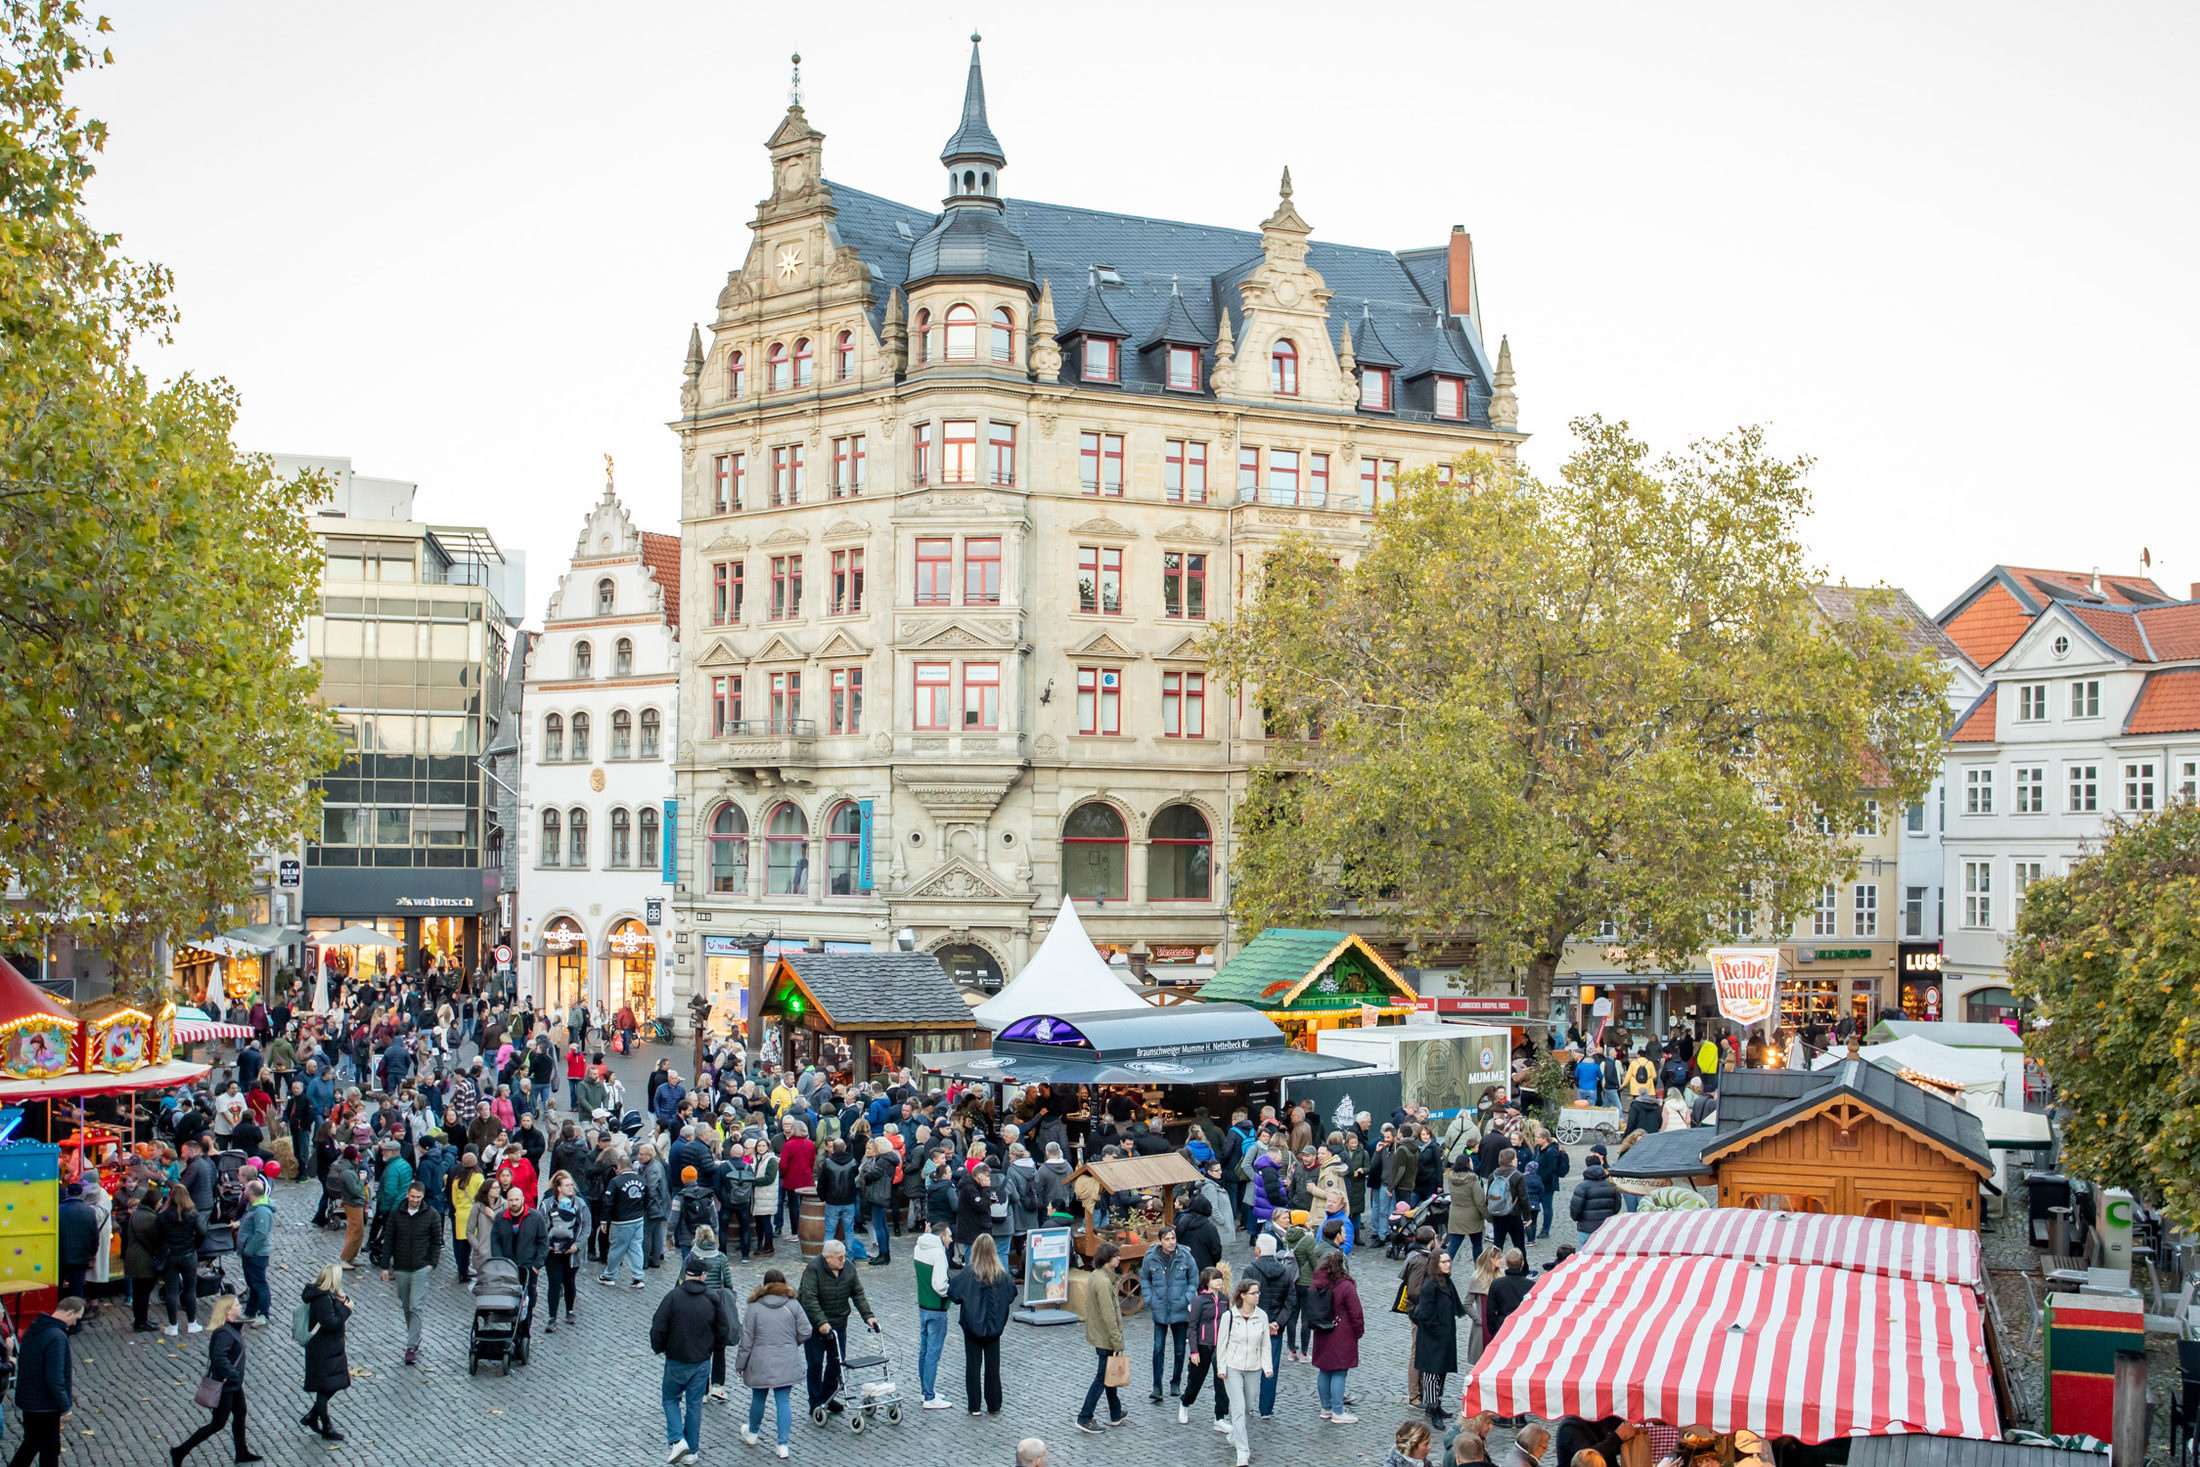 Die mummegenussmeile lockte am Wochenende zahlreiche Besucherinnen und Besucher in die Braunschweiger Innenstadt. (Wird bei Klick vergrößert)